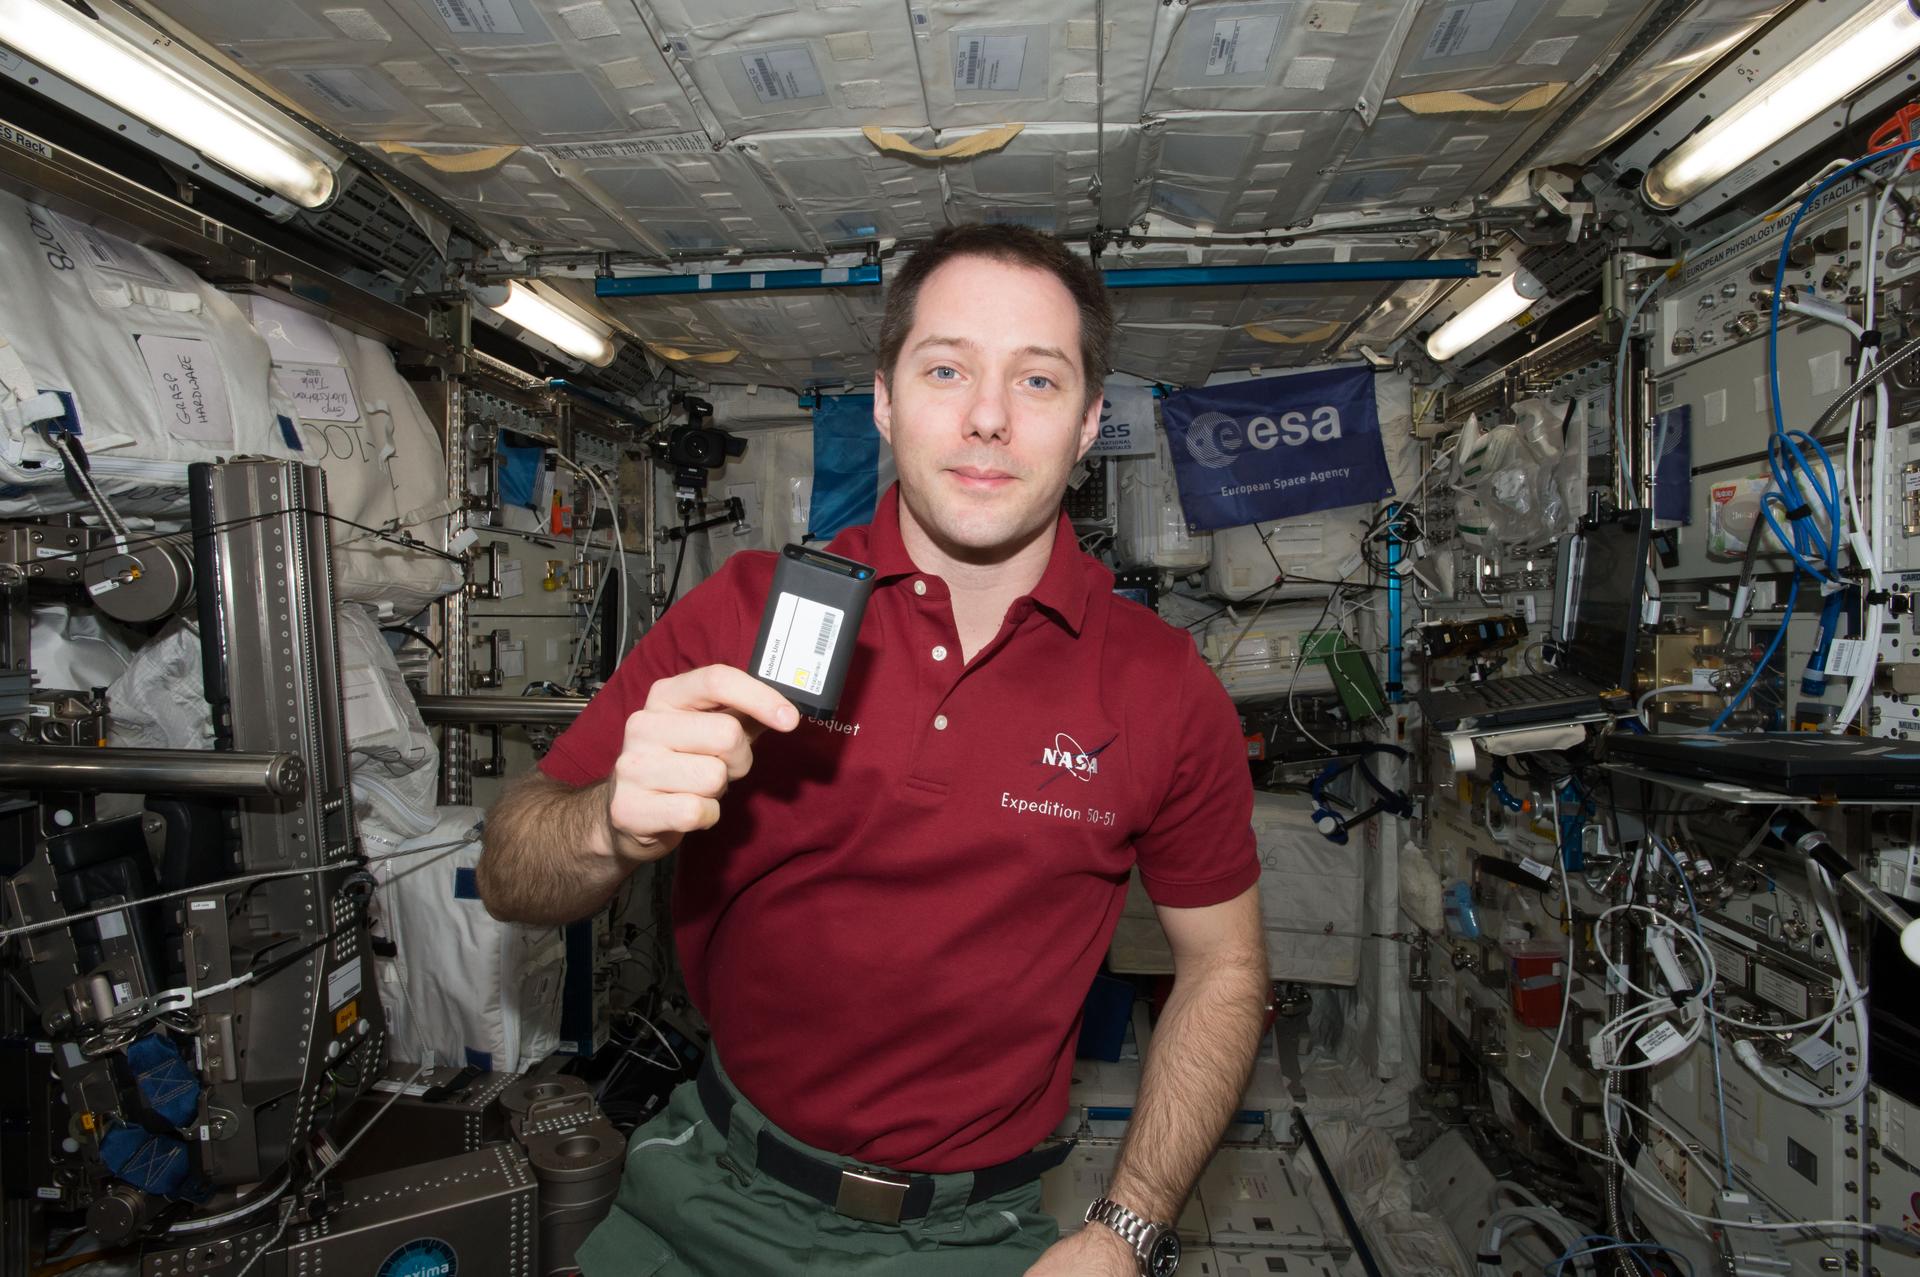 El astronauta de la ESA (Agencia Espacial Europea) Thomas Pesquet sostiene una unidad móvil para el experimento ESA-Dosímetros-Activos.